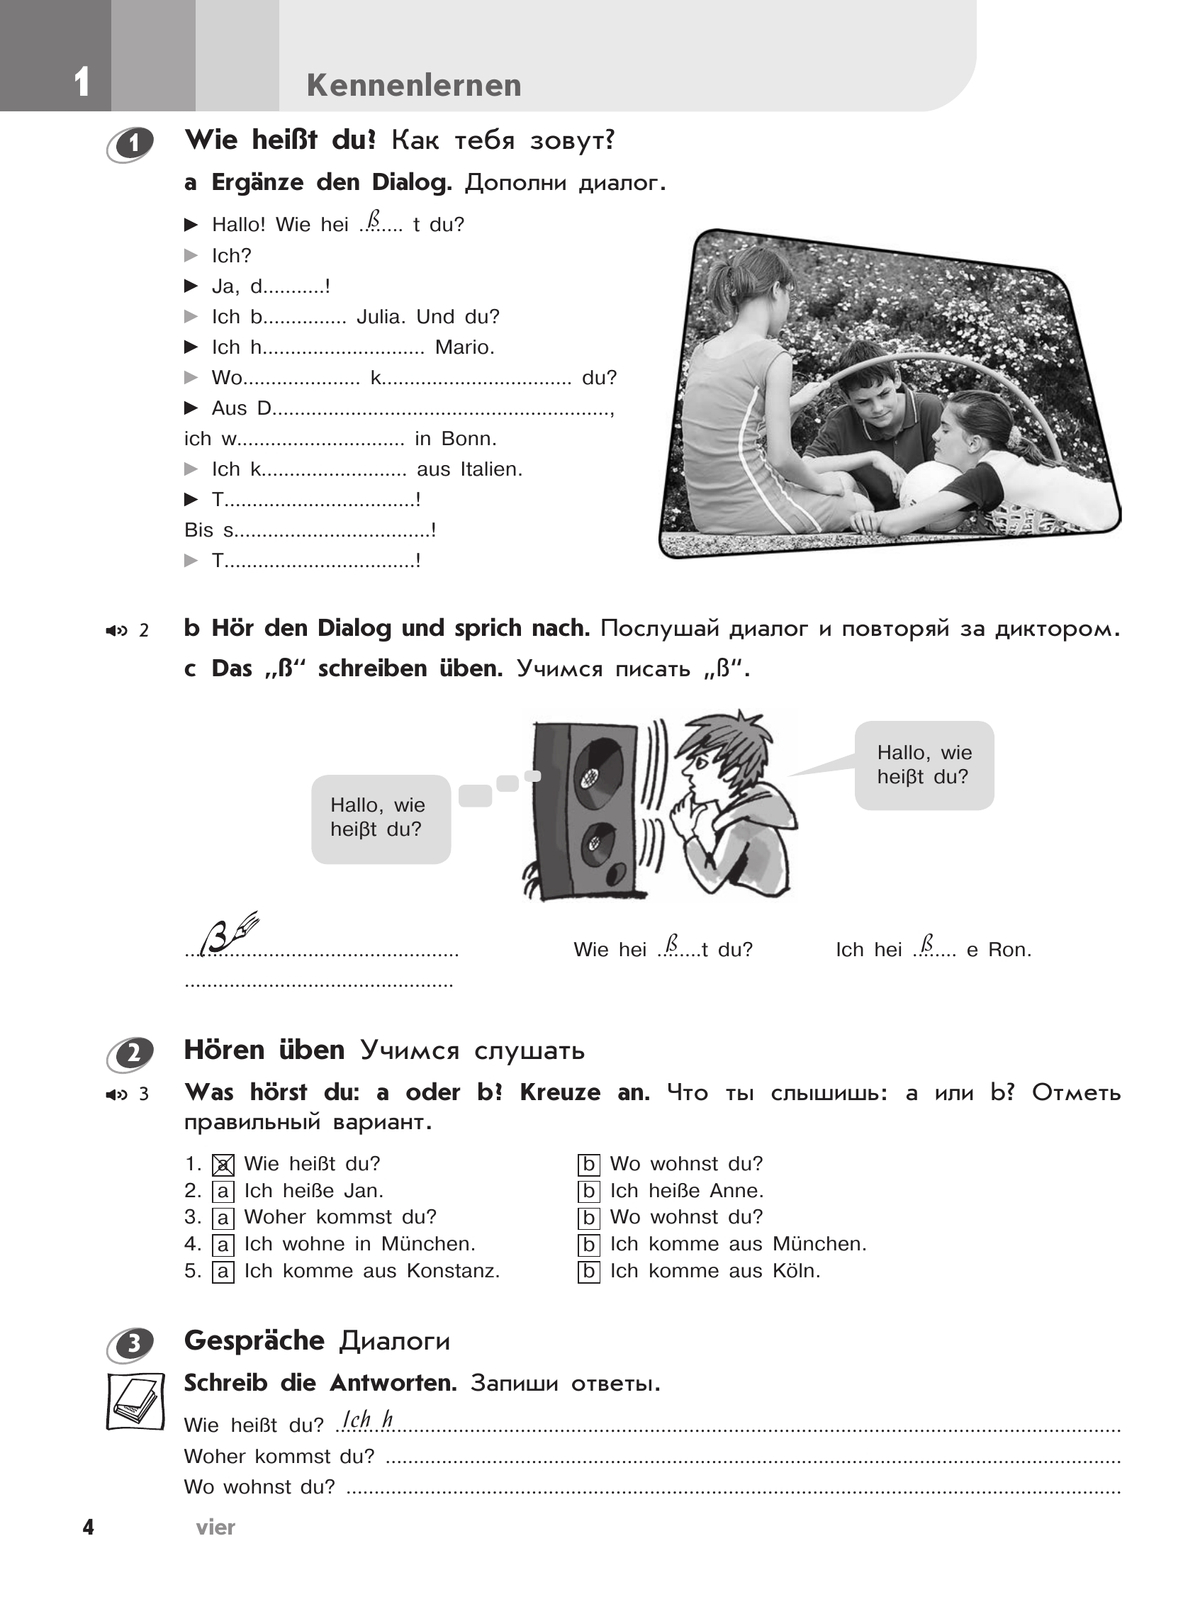 Немецкий язык. Рабочая тетрадь. 5 класс 8